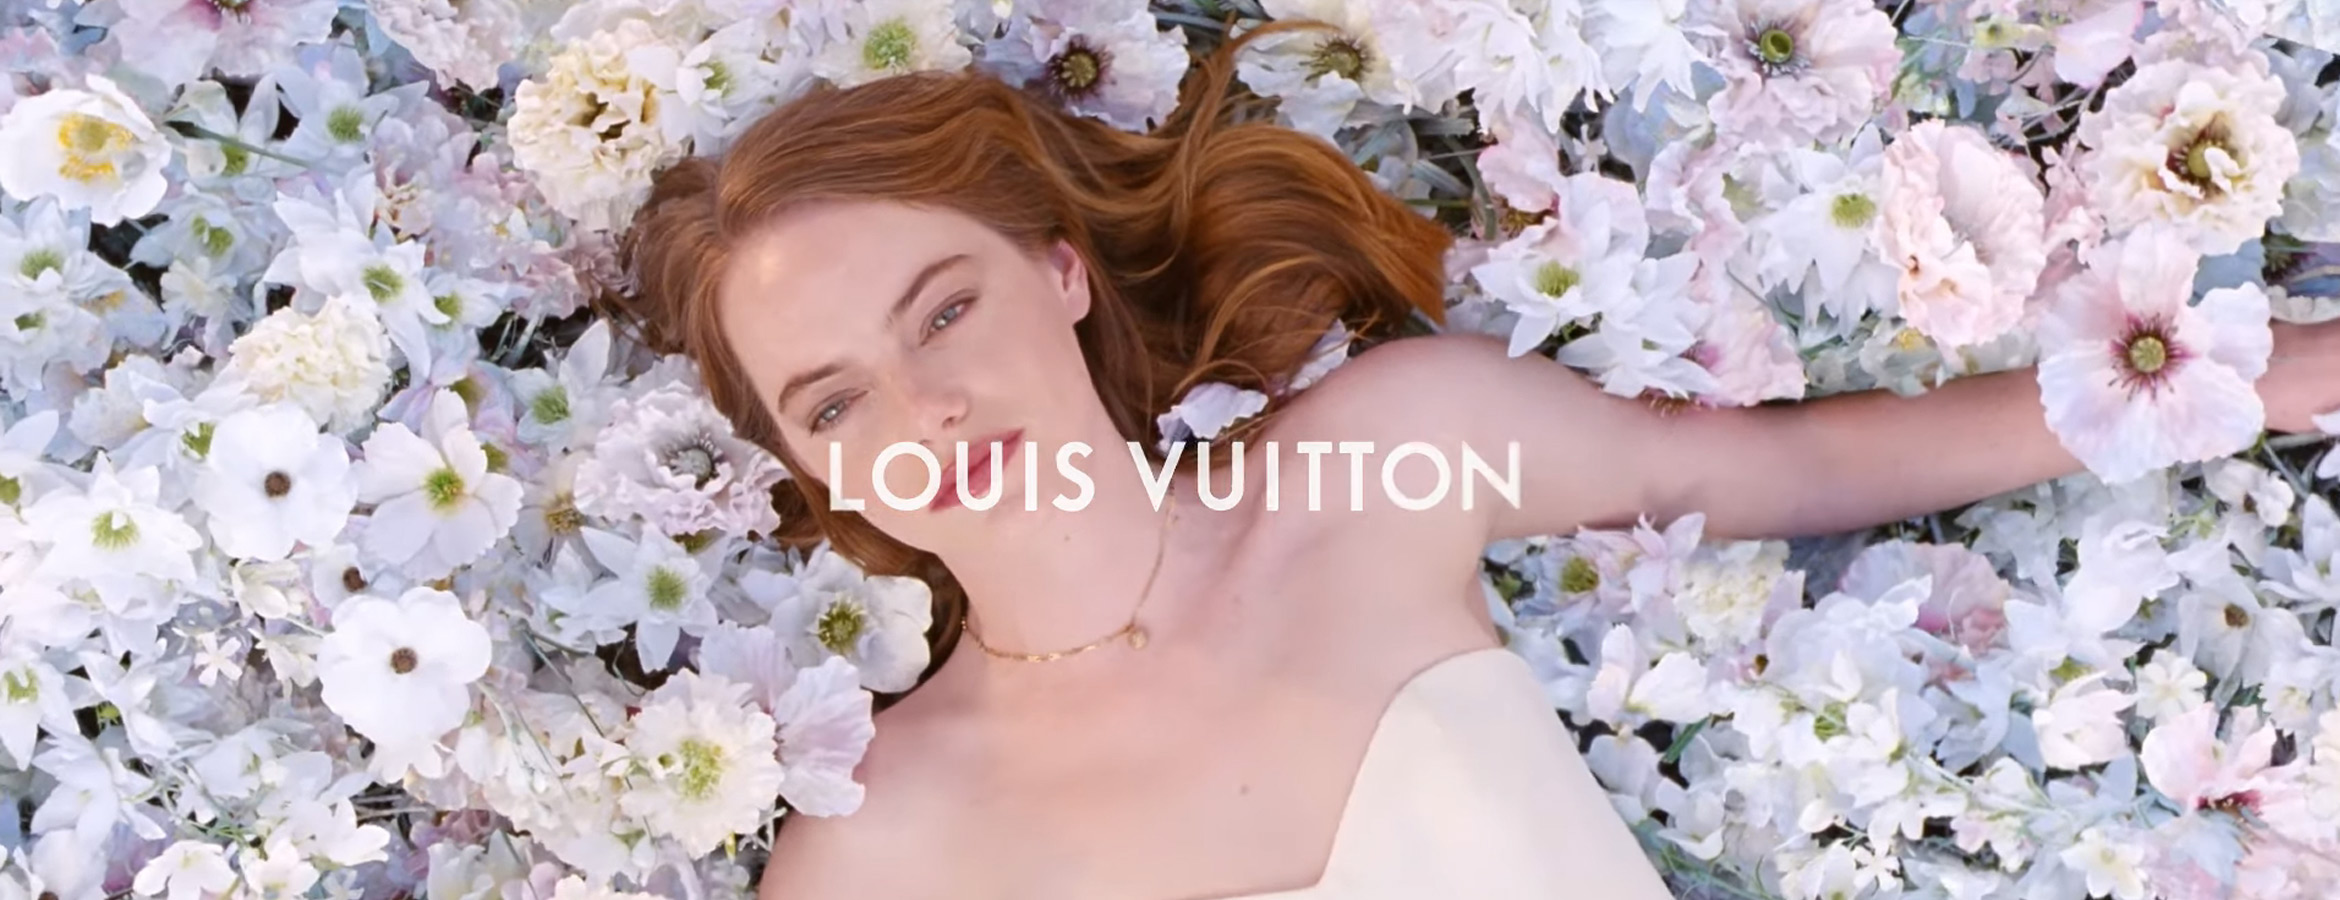 Musique Pub Louis Vuitton 2020 Avec Emma Stone